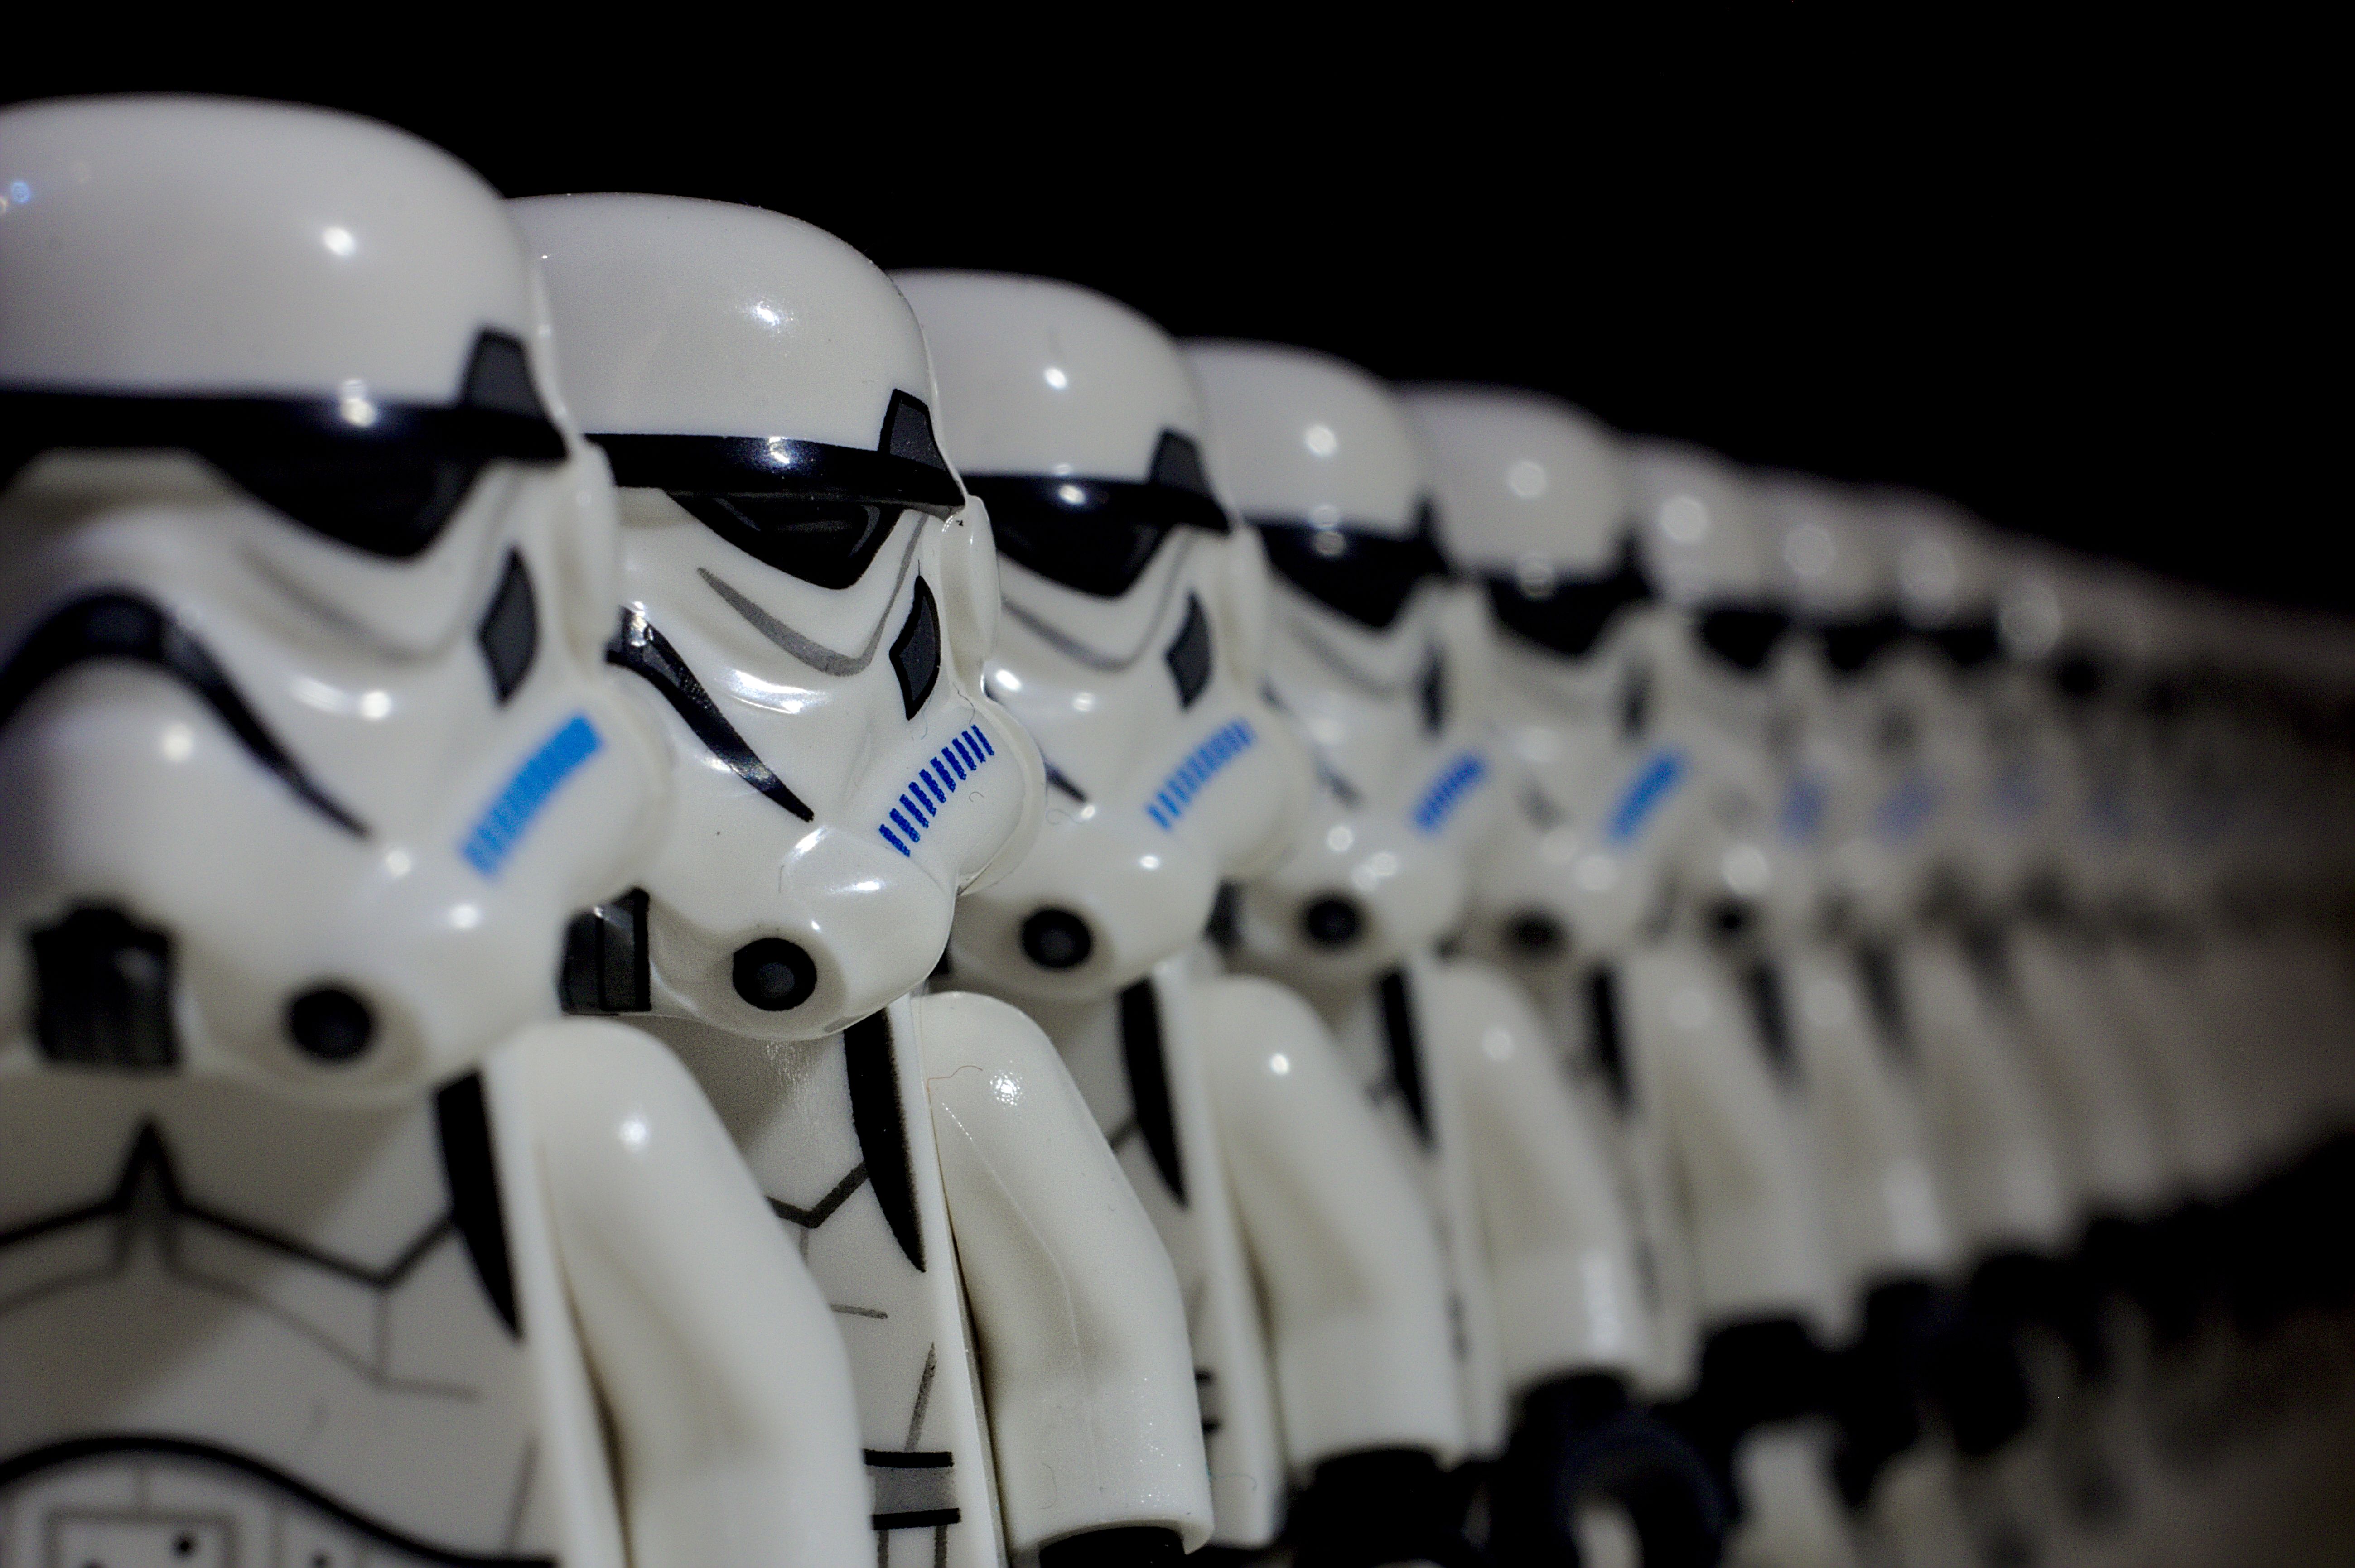 Star Wars Stormtrooper Toy 5198x3462